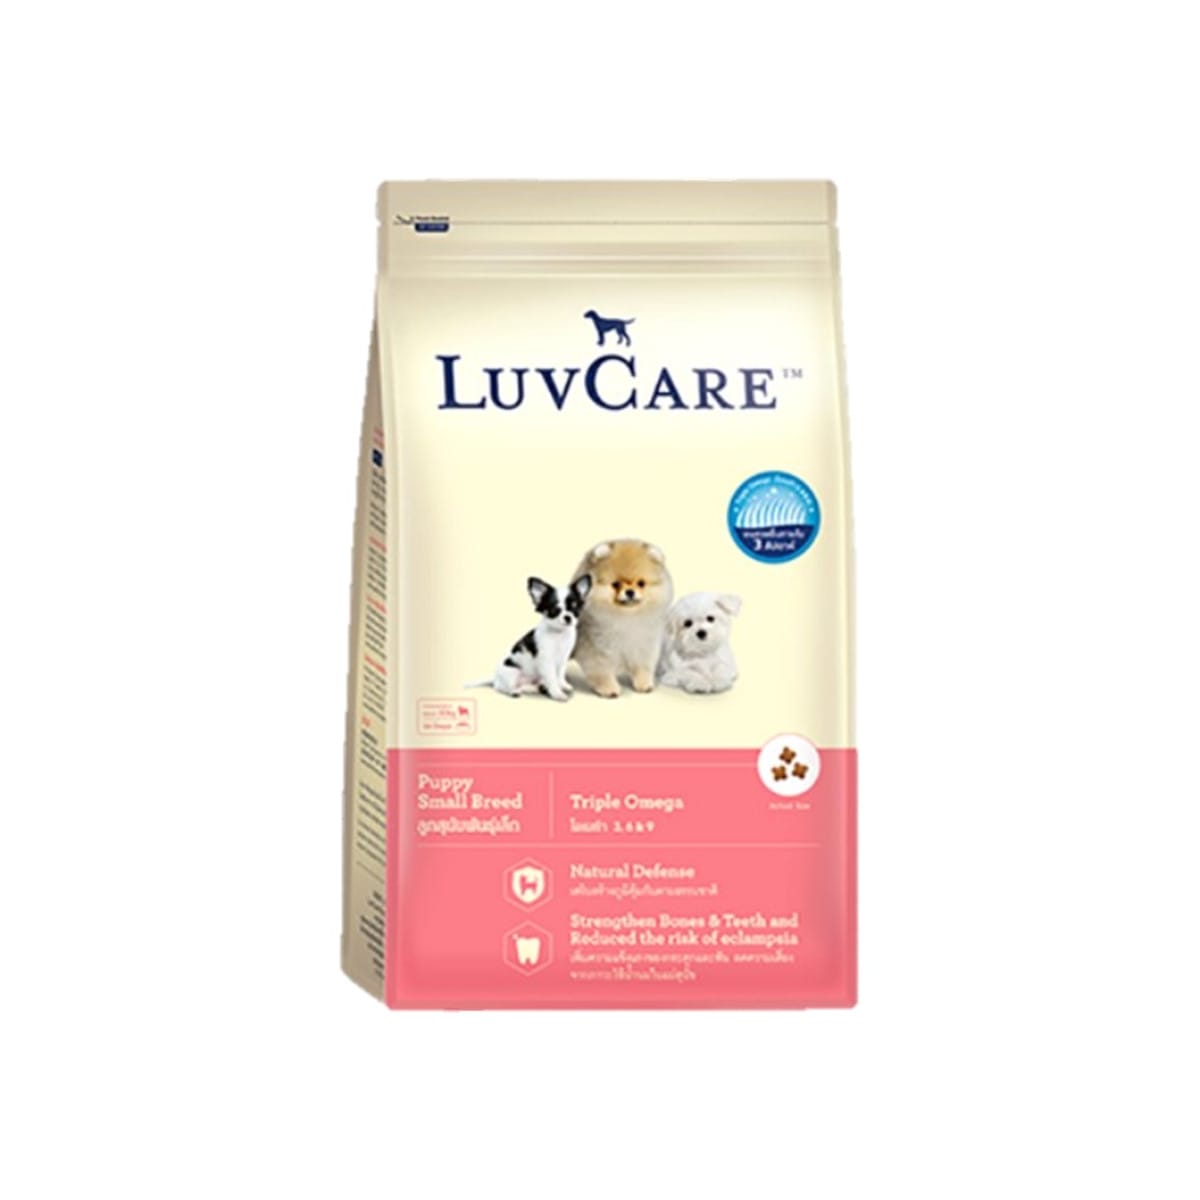 Luv Care เลิฟแคร์ อาหารสุนัข แบบเม็ด สำหรับลูกสุนัข พันธุ์เล็ก สูตร ทริปเปิ้ลโอเมก้า 2 kg